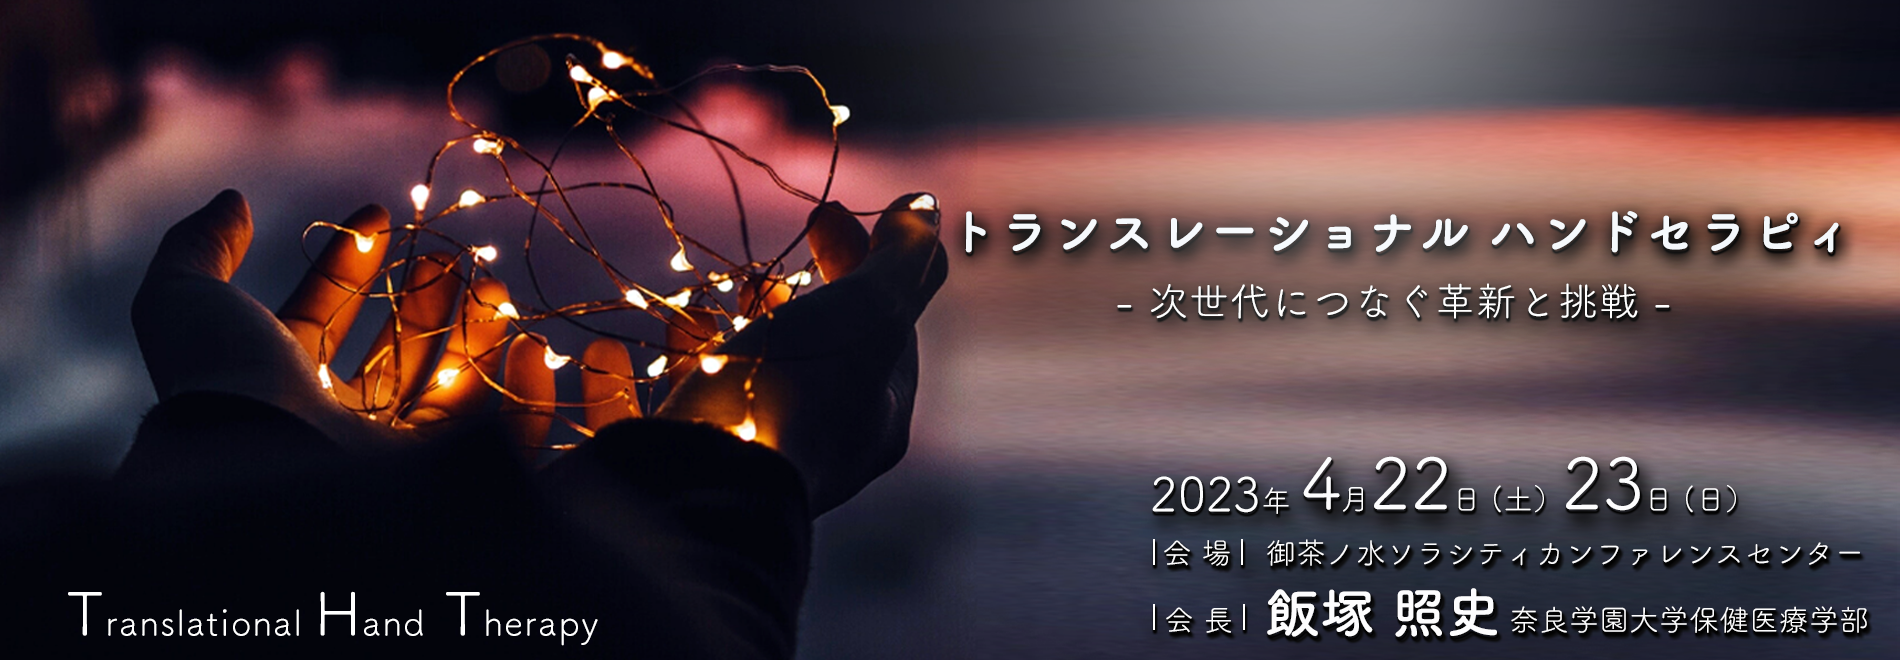 第35回日本ハンドセラピィ学会学術集会